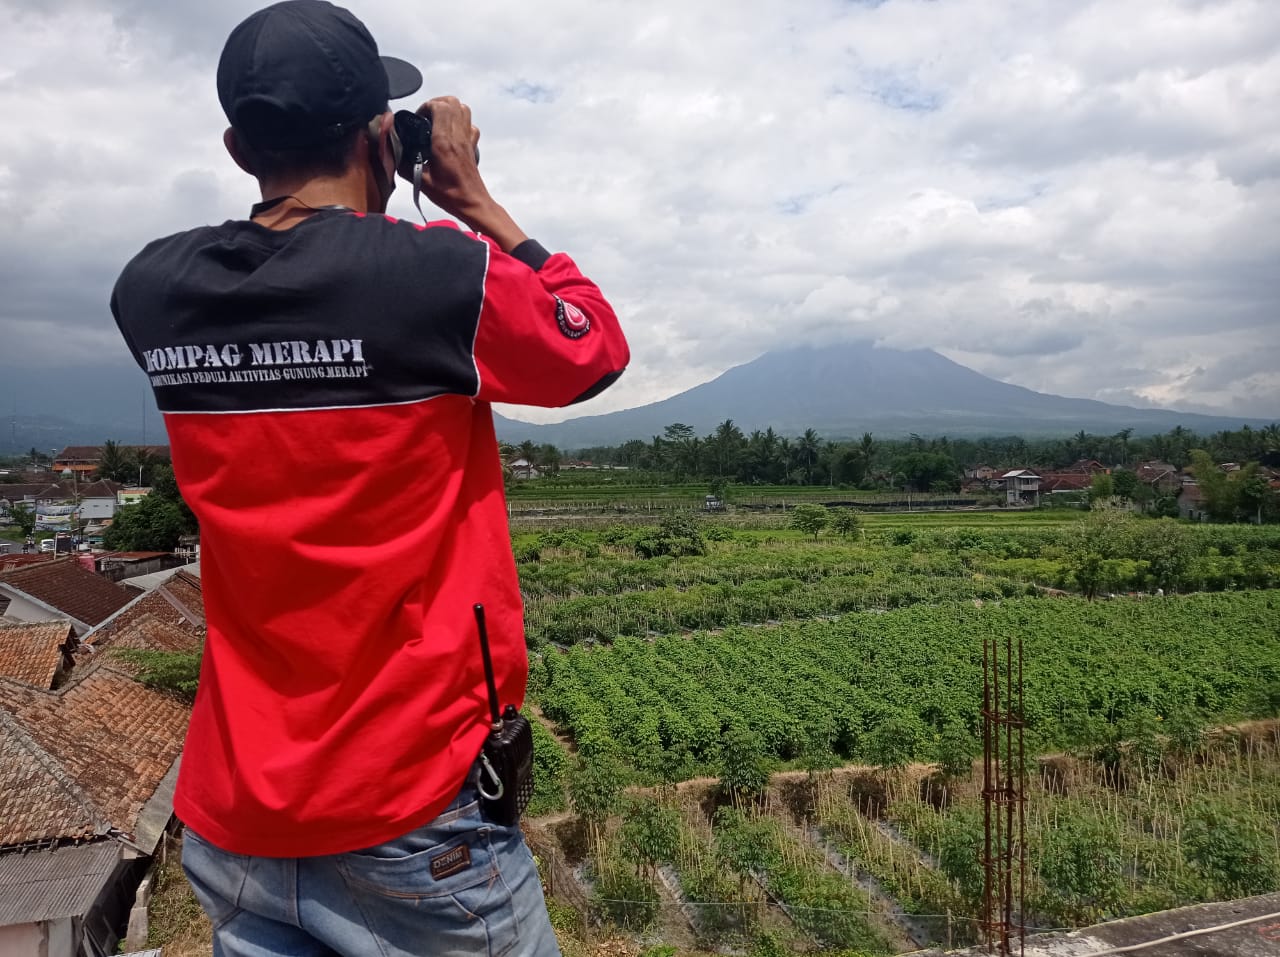 Salah satu anggota Komunitas Relawan Kompag Merapi saat memantau visual Gunung Merapi dari atas menara pemantauan (8/12/2020)-(Foto: bsn)